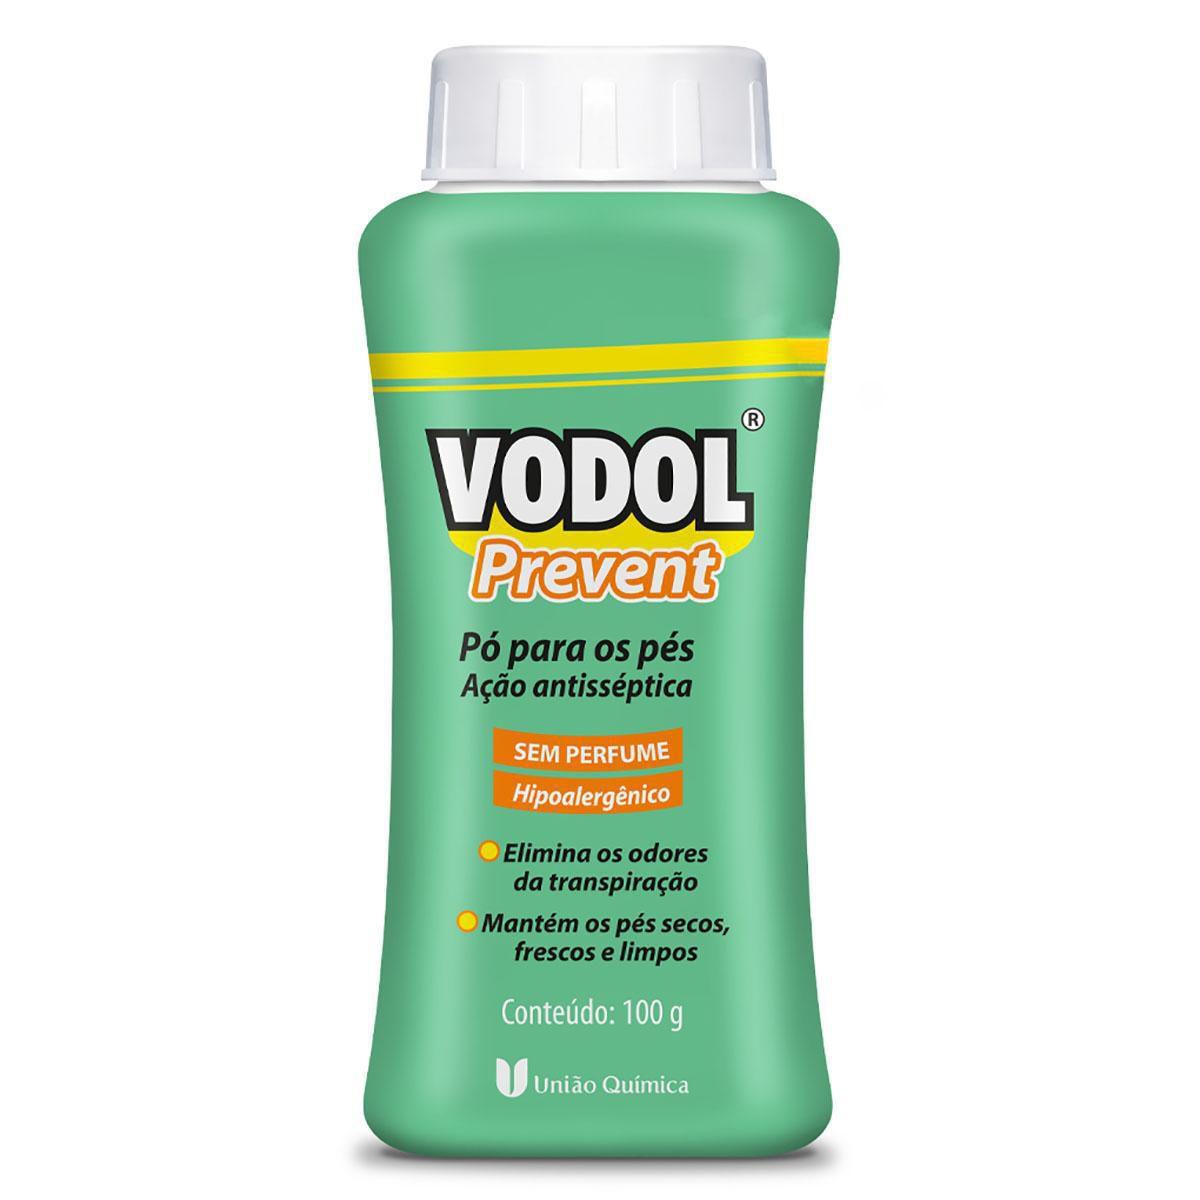 Vodol-Prevent-Talco-Antisseptico-Sem-Perfume-Para-Os-Pes-com-100g